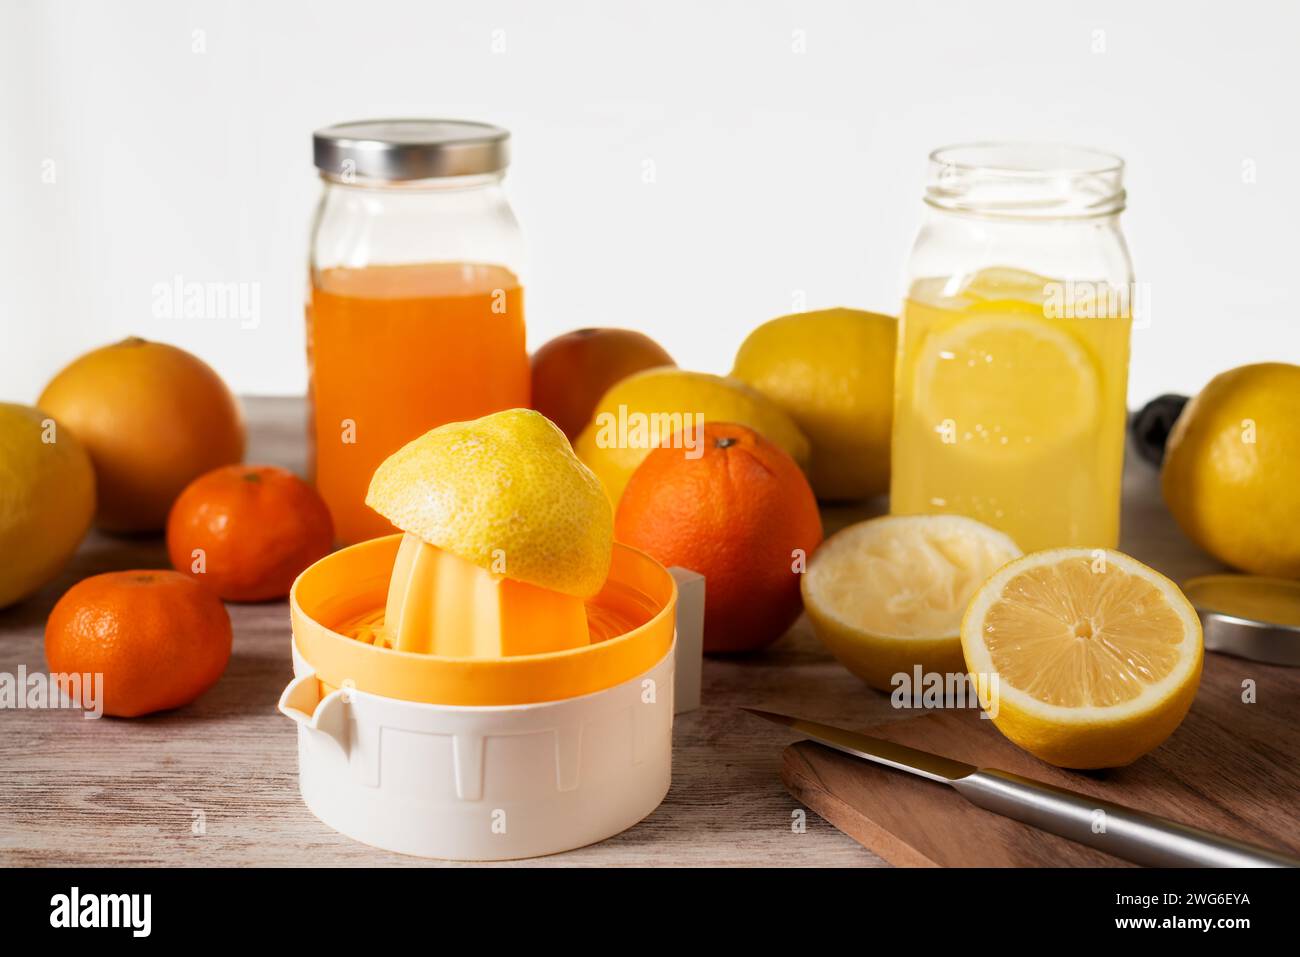 Centrifuga manuale accanto a diversi agrumi per preparare il succo, accanto a due vasetti, uno con succo d'arancia e l'altro con succo di limone. Foto Stock